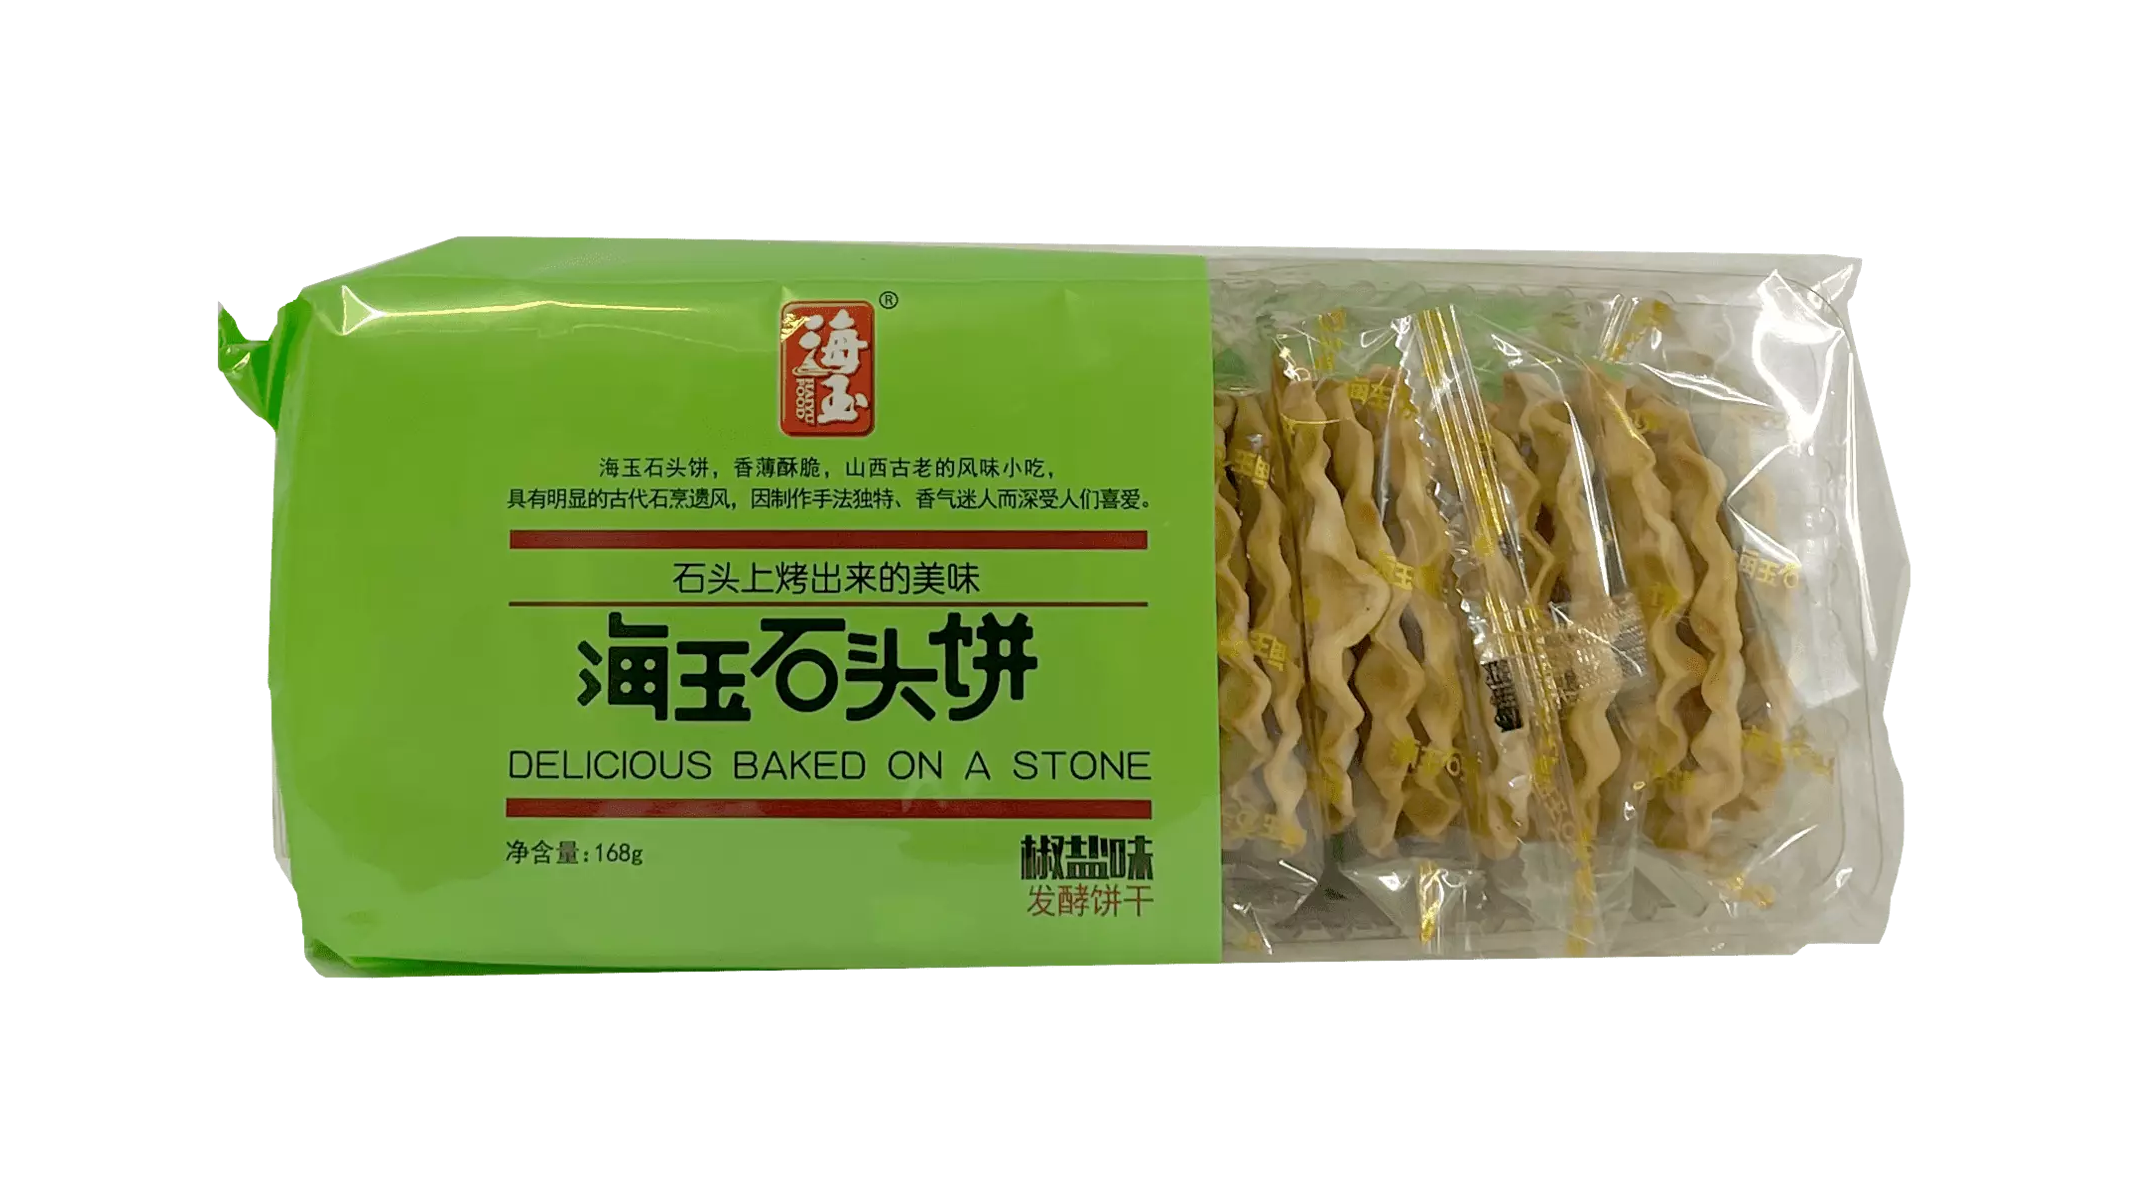 海玉 石头饼 发酵饼干 椒盐味 168g 海玉 中国